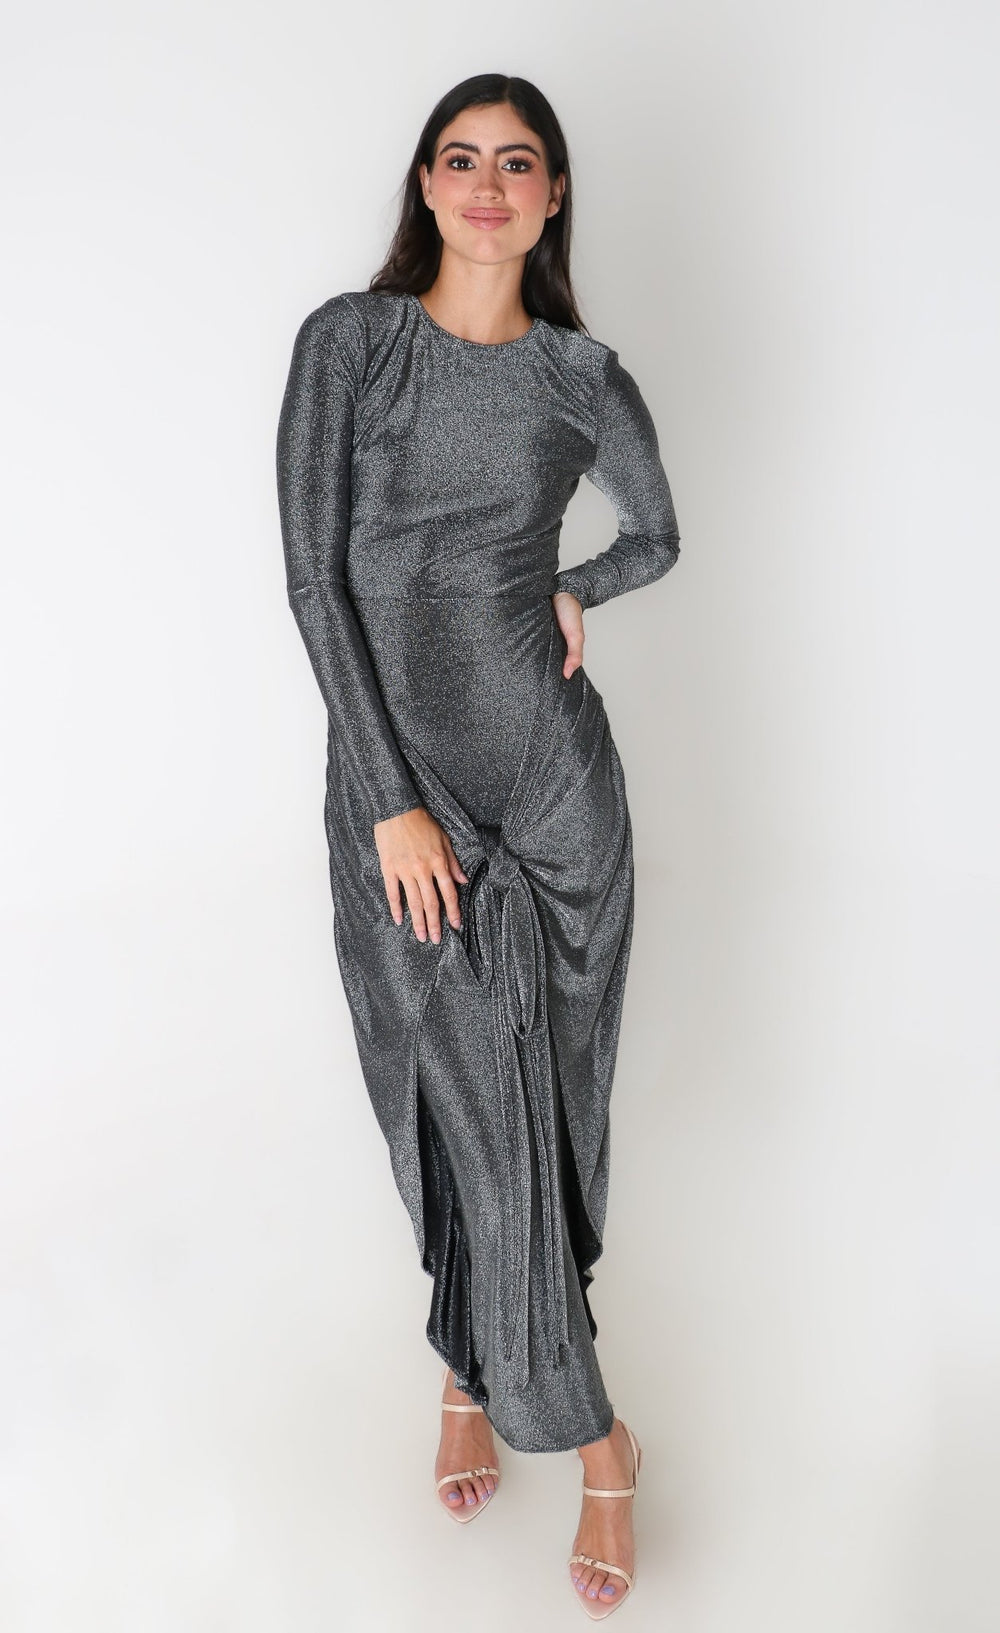 Valeria - gris - Lend the Trend renta de vestidos mexico